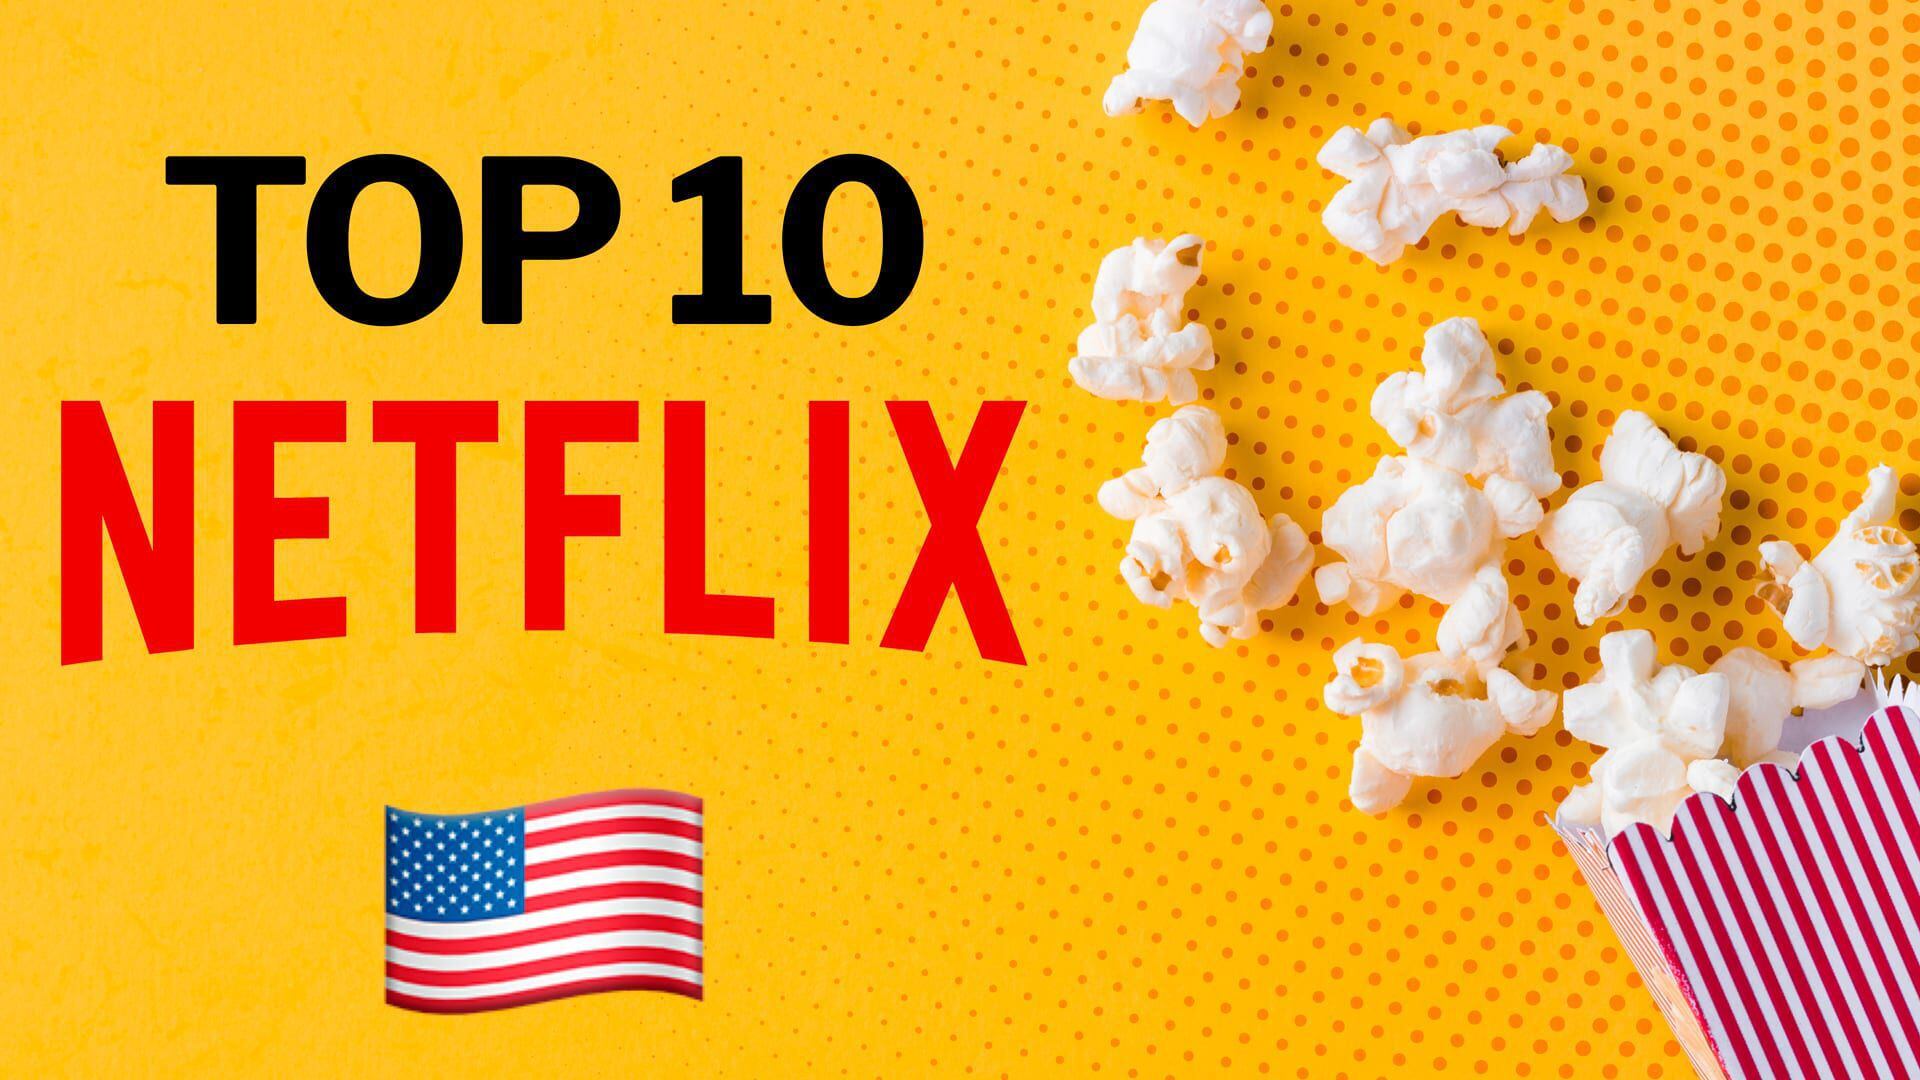 Pese al gran número de competidores, Netflix sigue estando entre las plataformas favoritas del público con sus grandes y afamadas producciones. (Infobae)